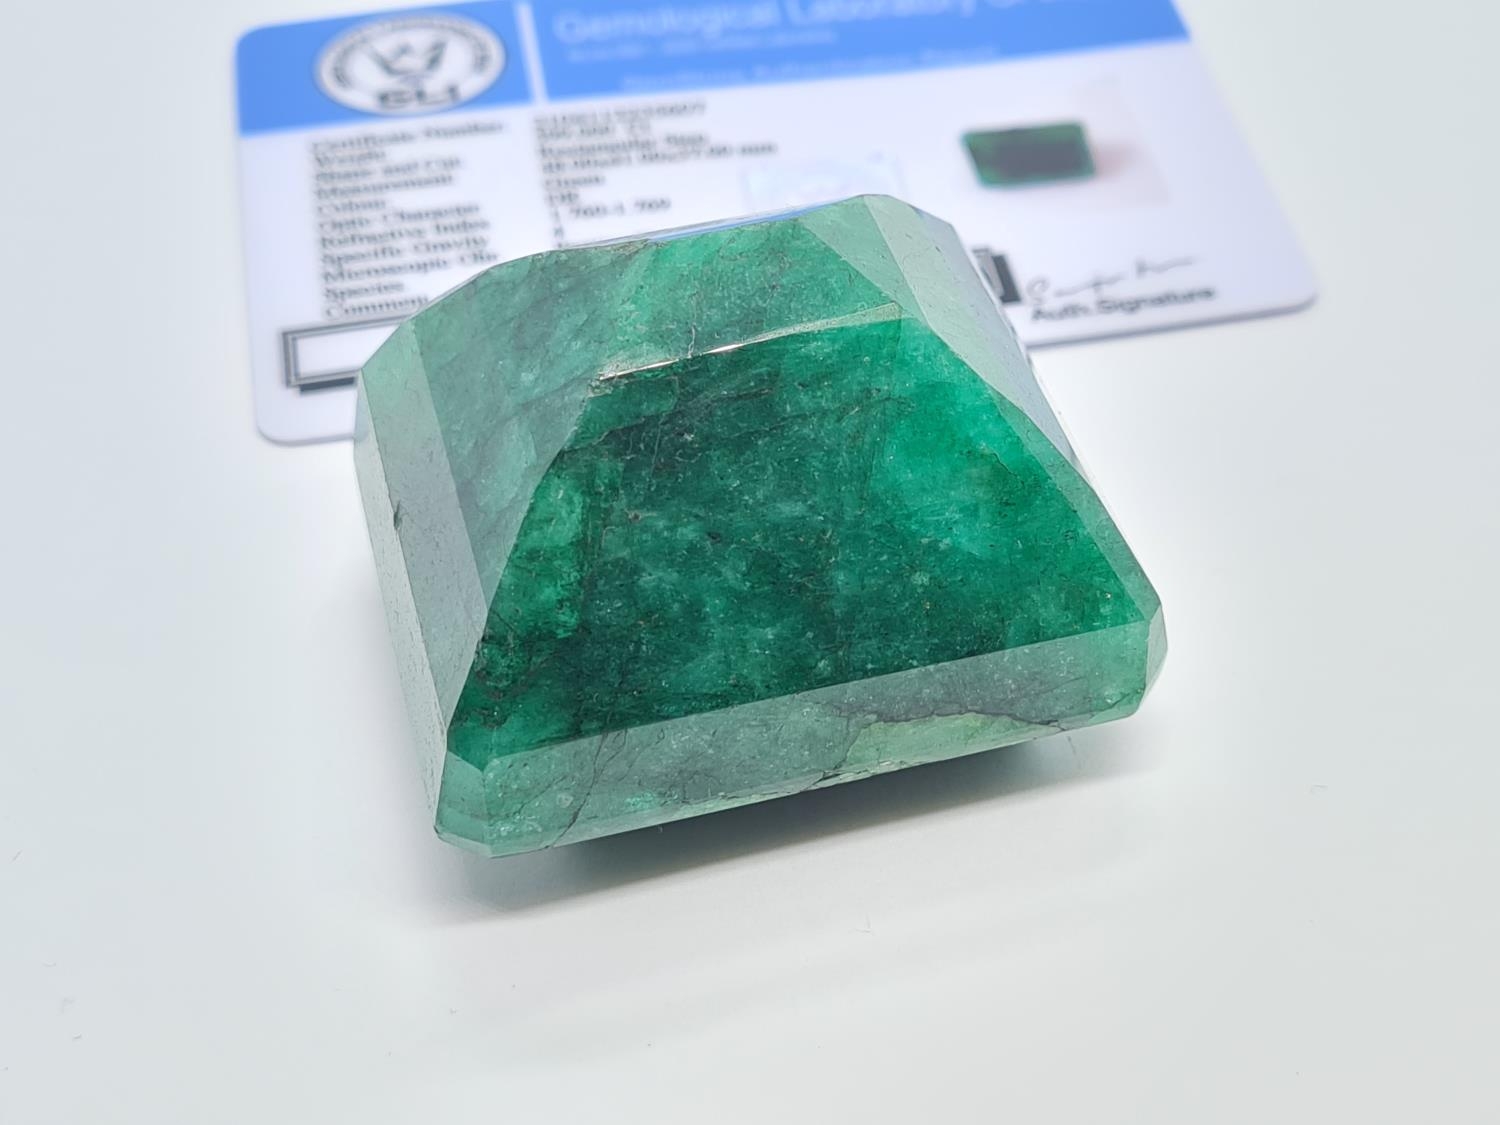 599ct Rectangular shaped emerald gemstone - Image 2 of 5